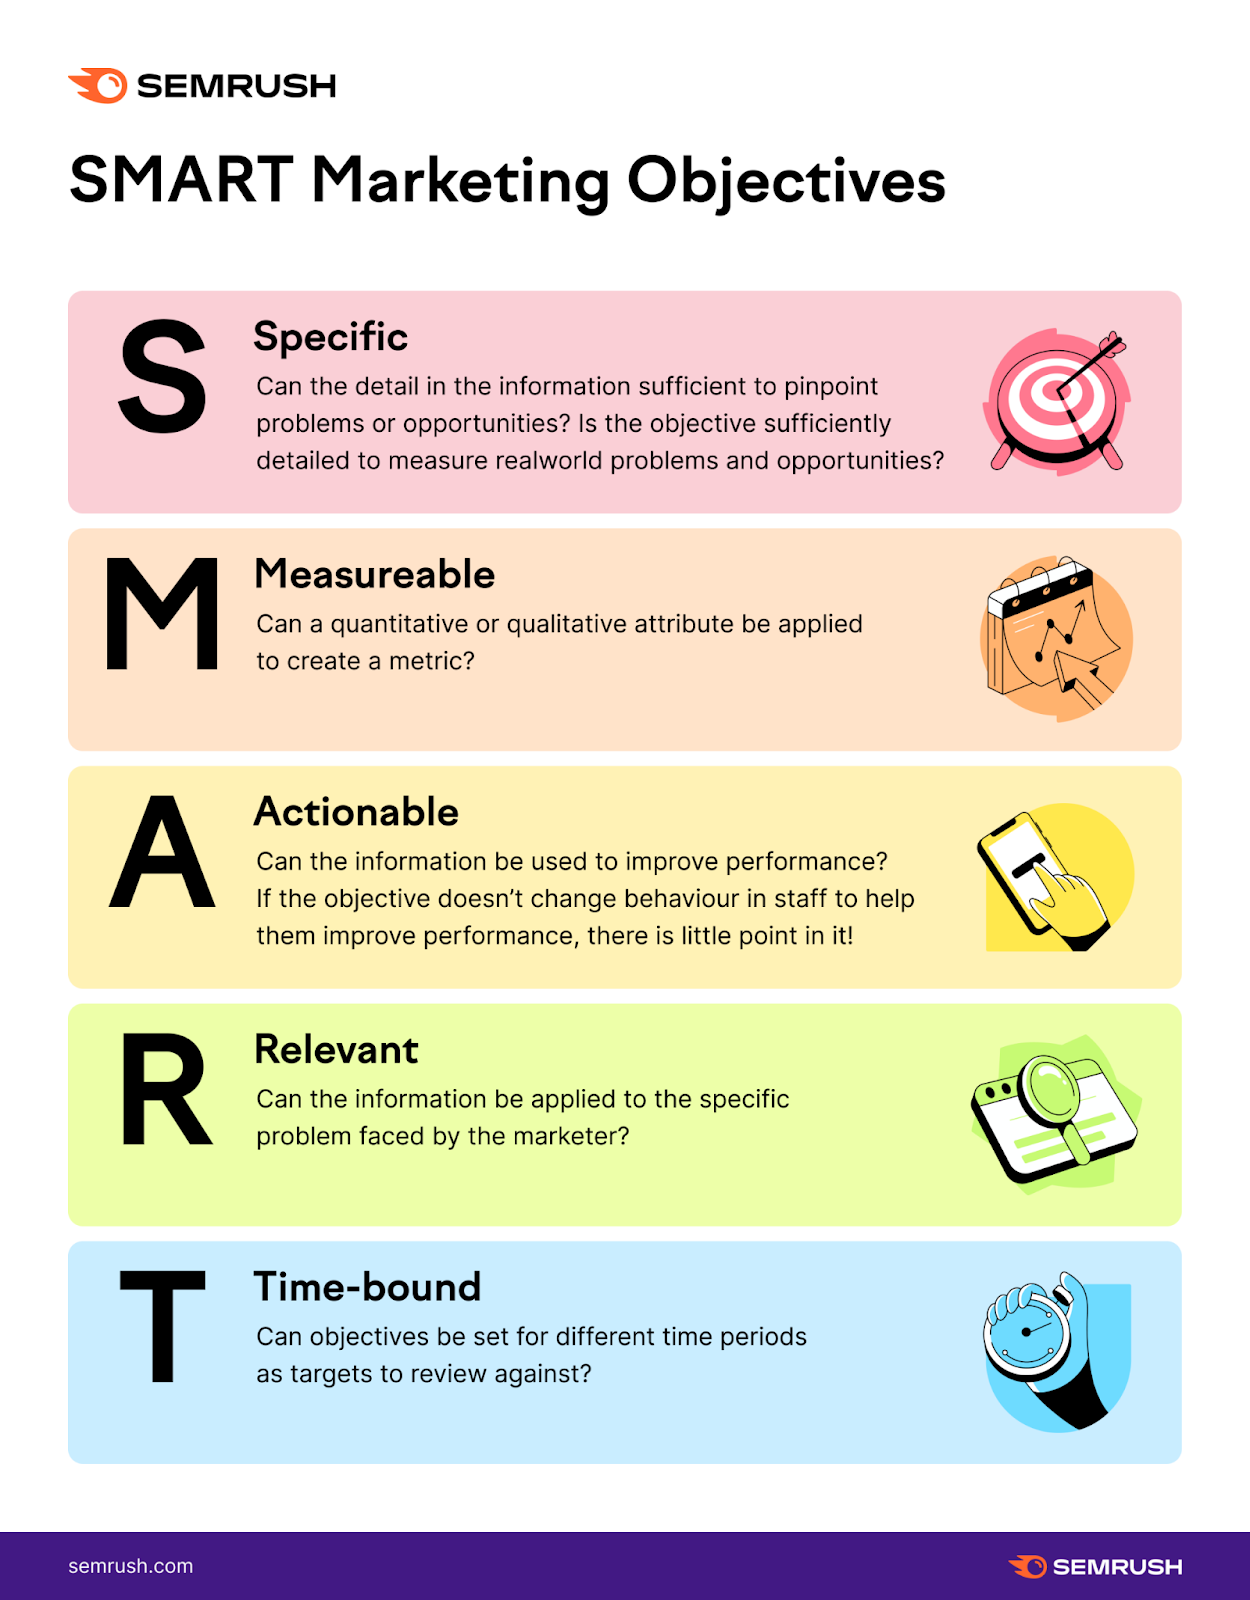 SMART marketing objectives explained